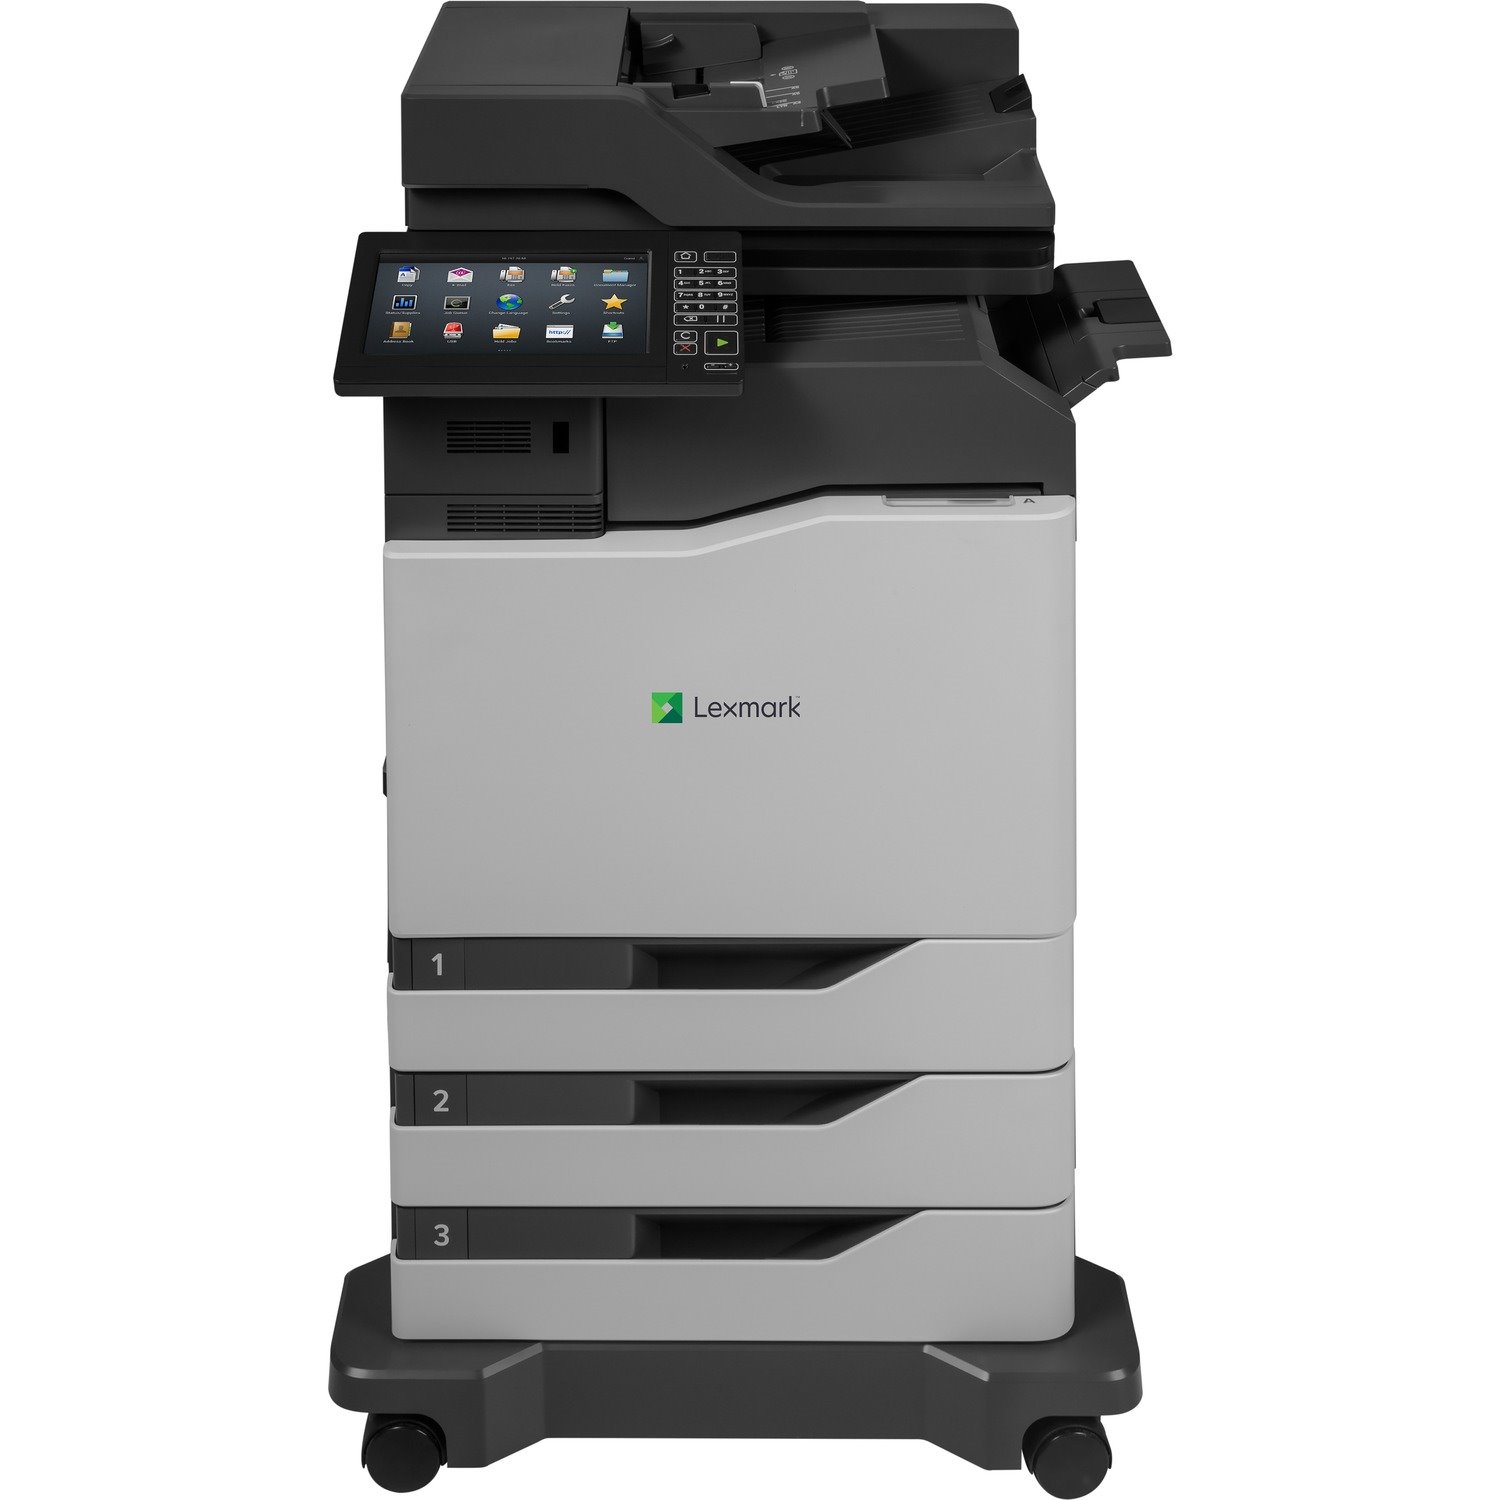 Lexmark CX825dtfe Laser Multifunction Printer - Color